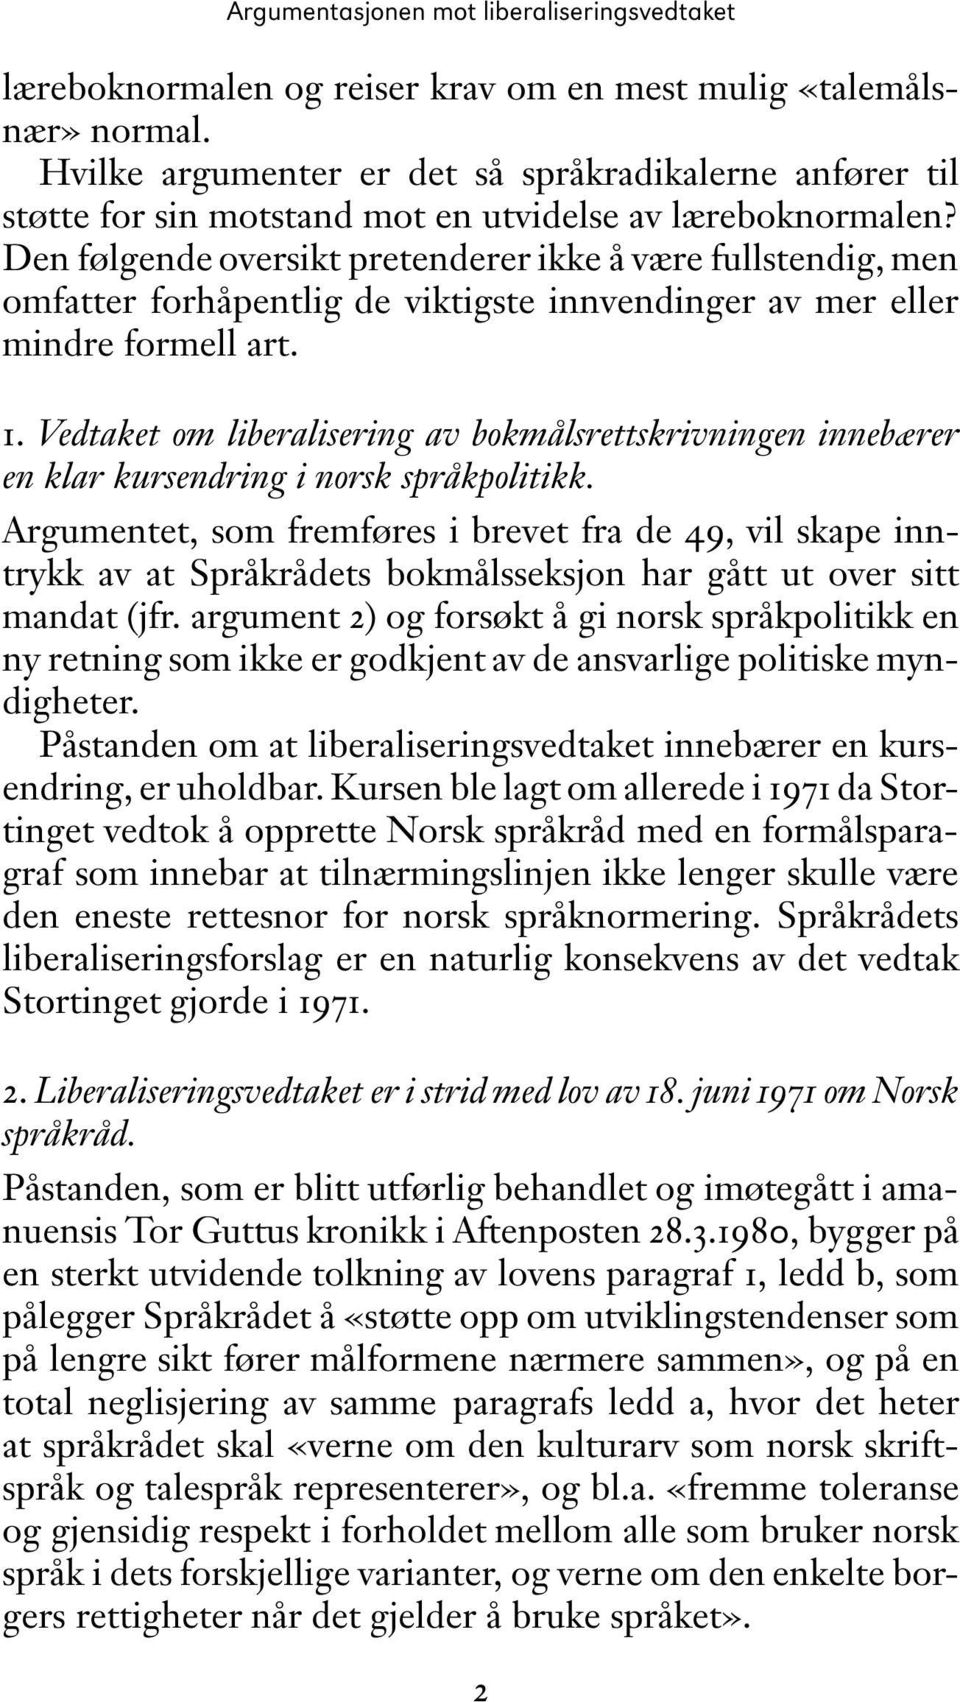 Vedtaket om liberalisering av bokmålsrettskrivningen innebærer en klar kursendring i norsk språkpolitikk.